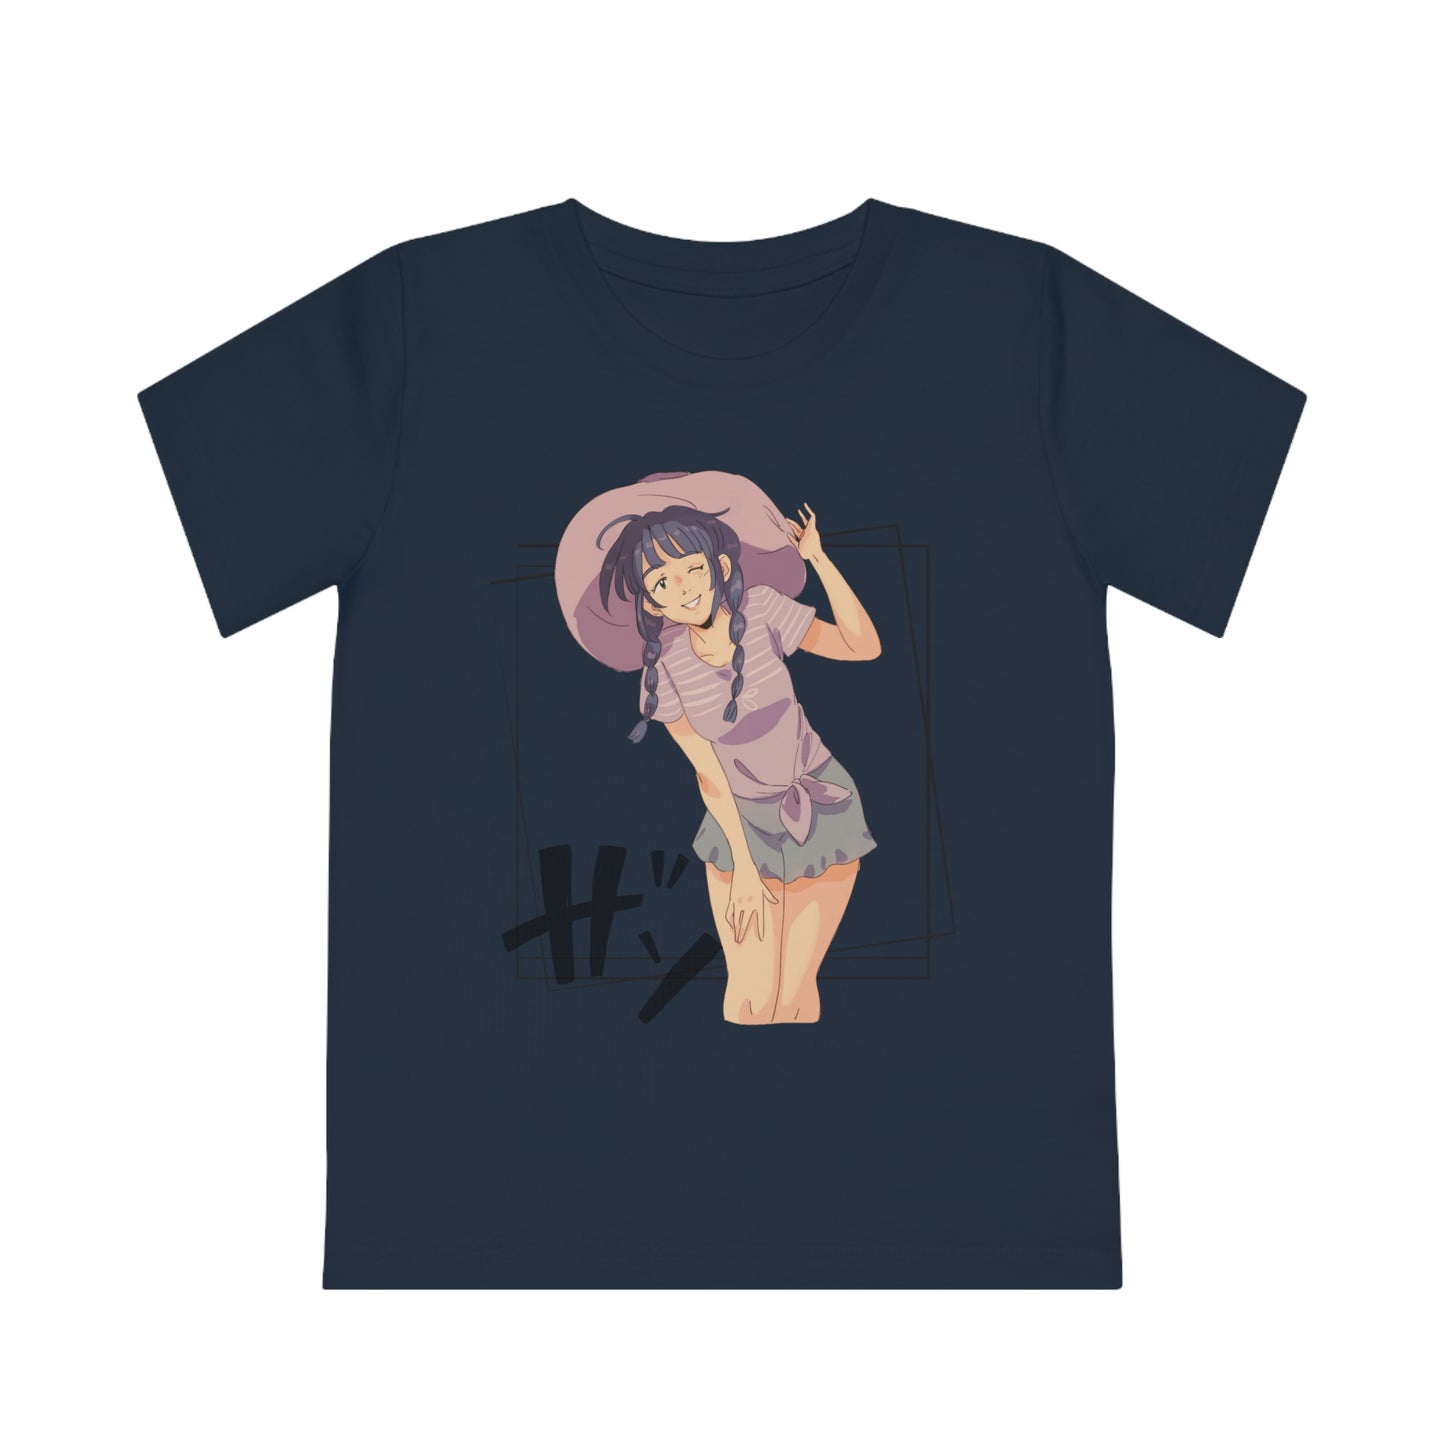 Anime Collection - Kids' T-Shirt - Anime Girl; Hi